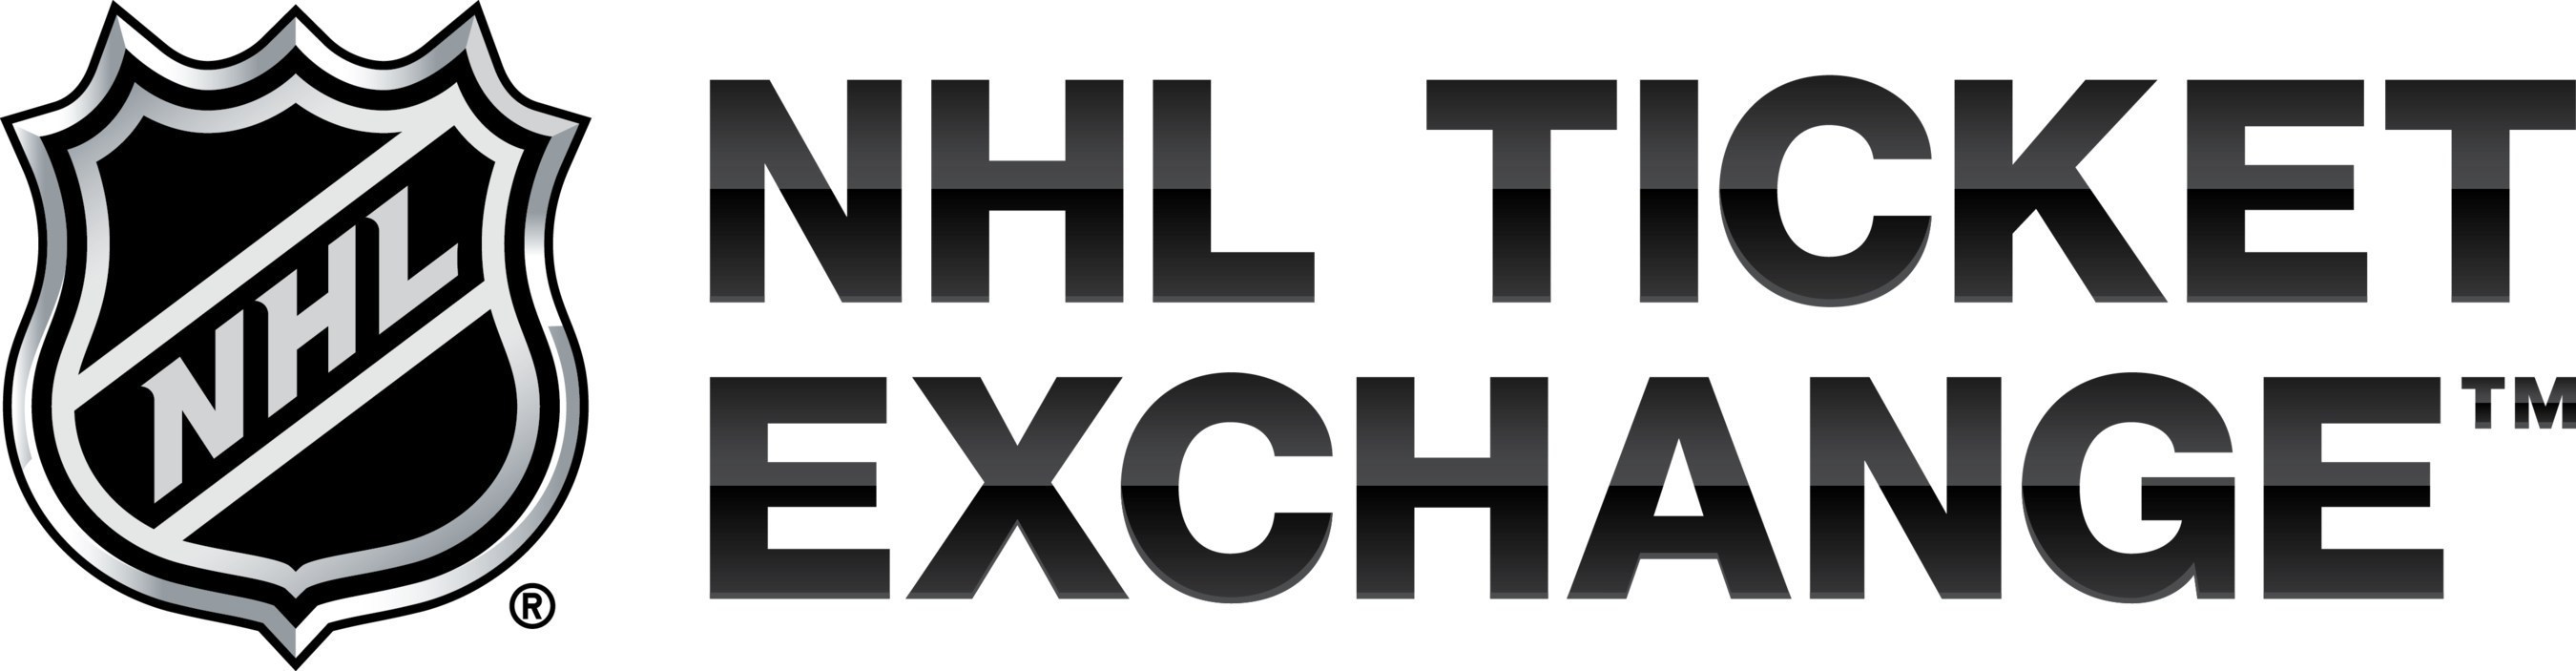 nhl hockey exchange